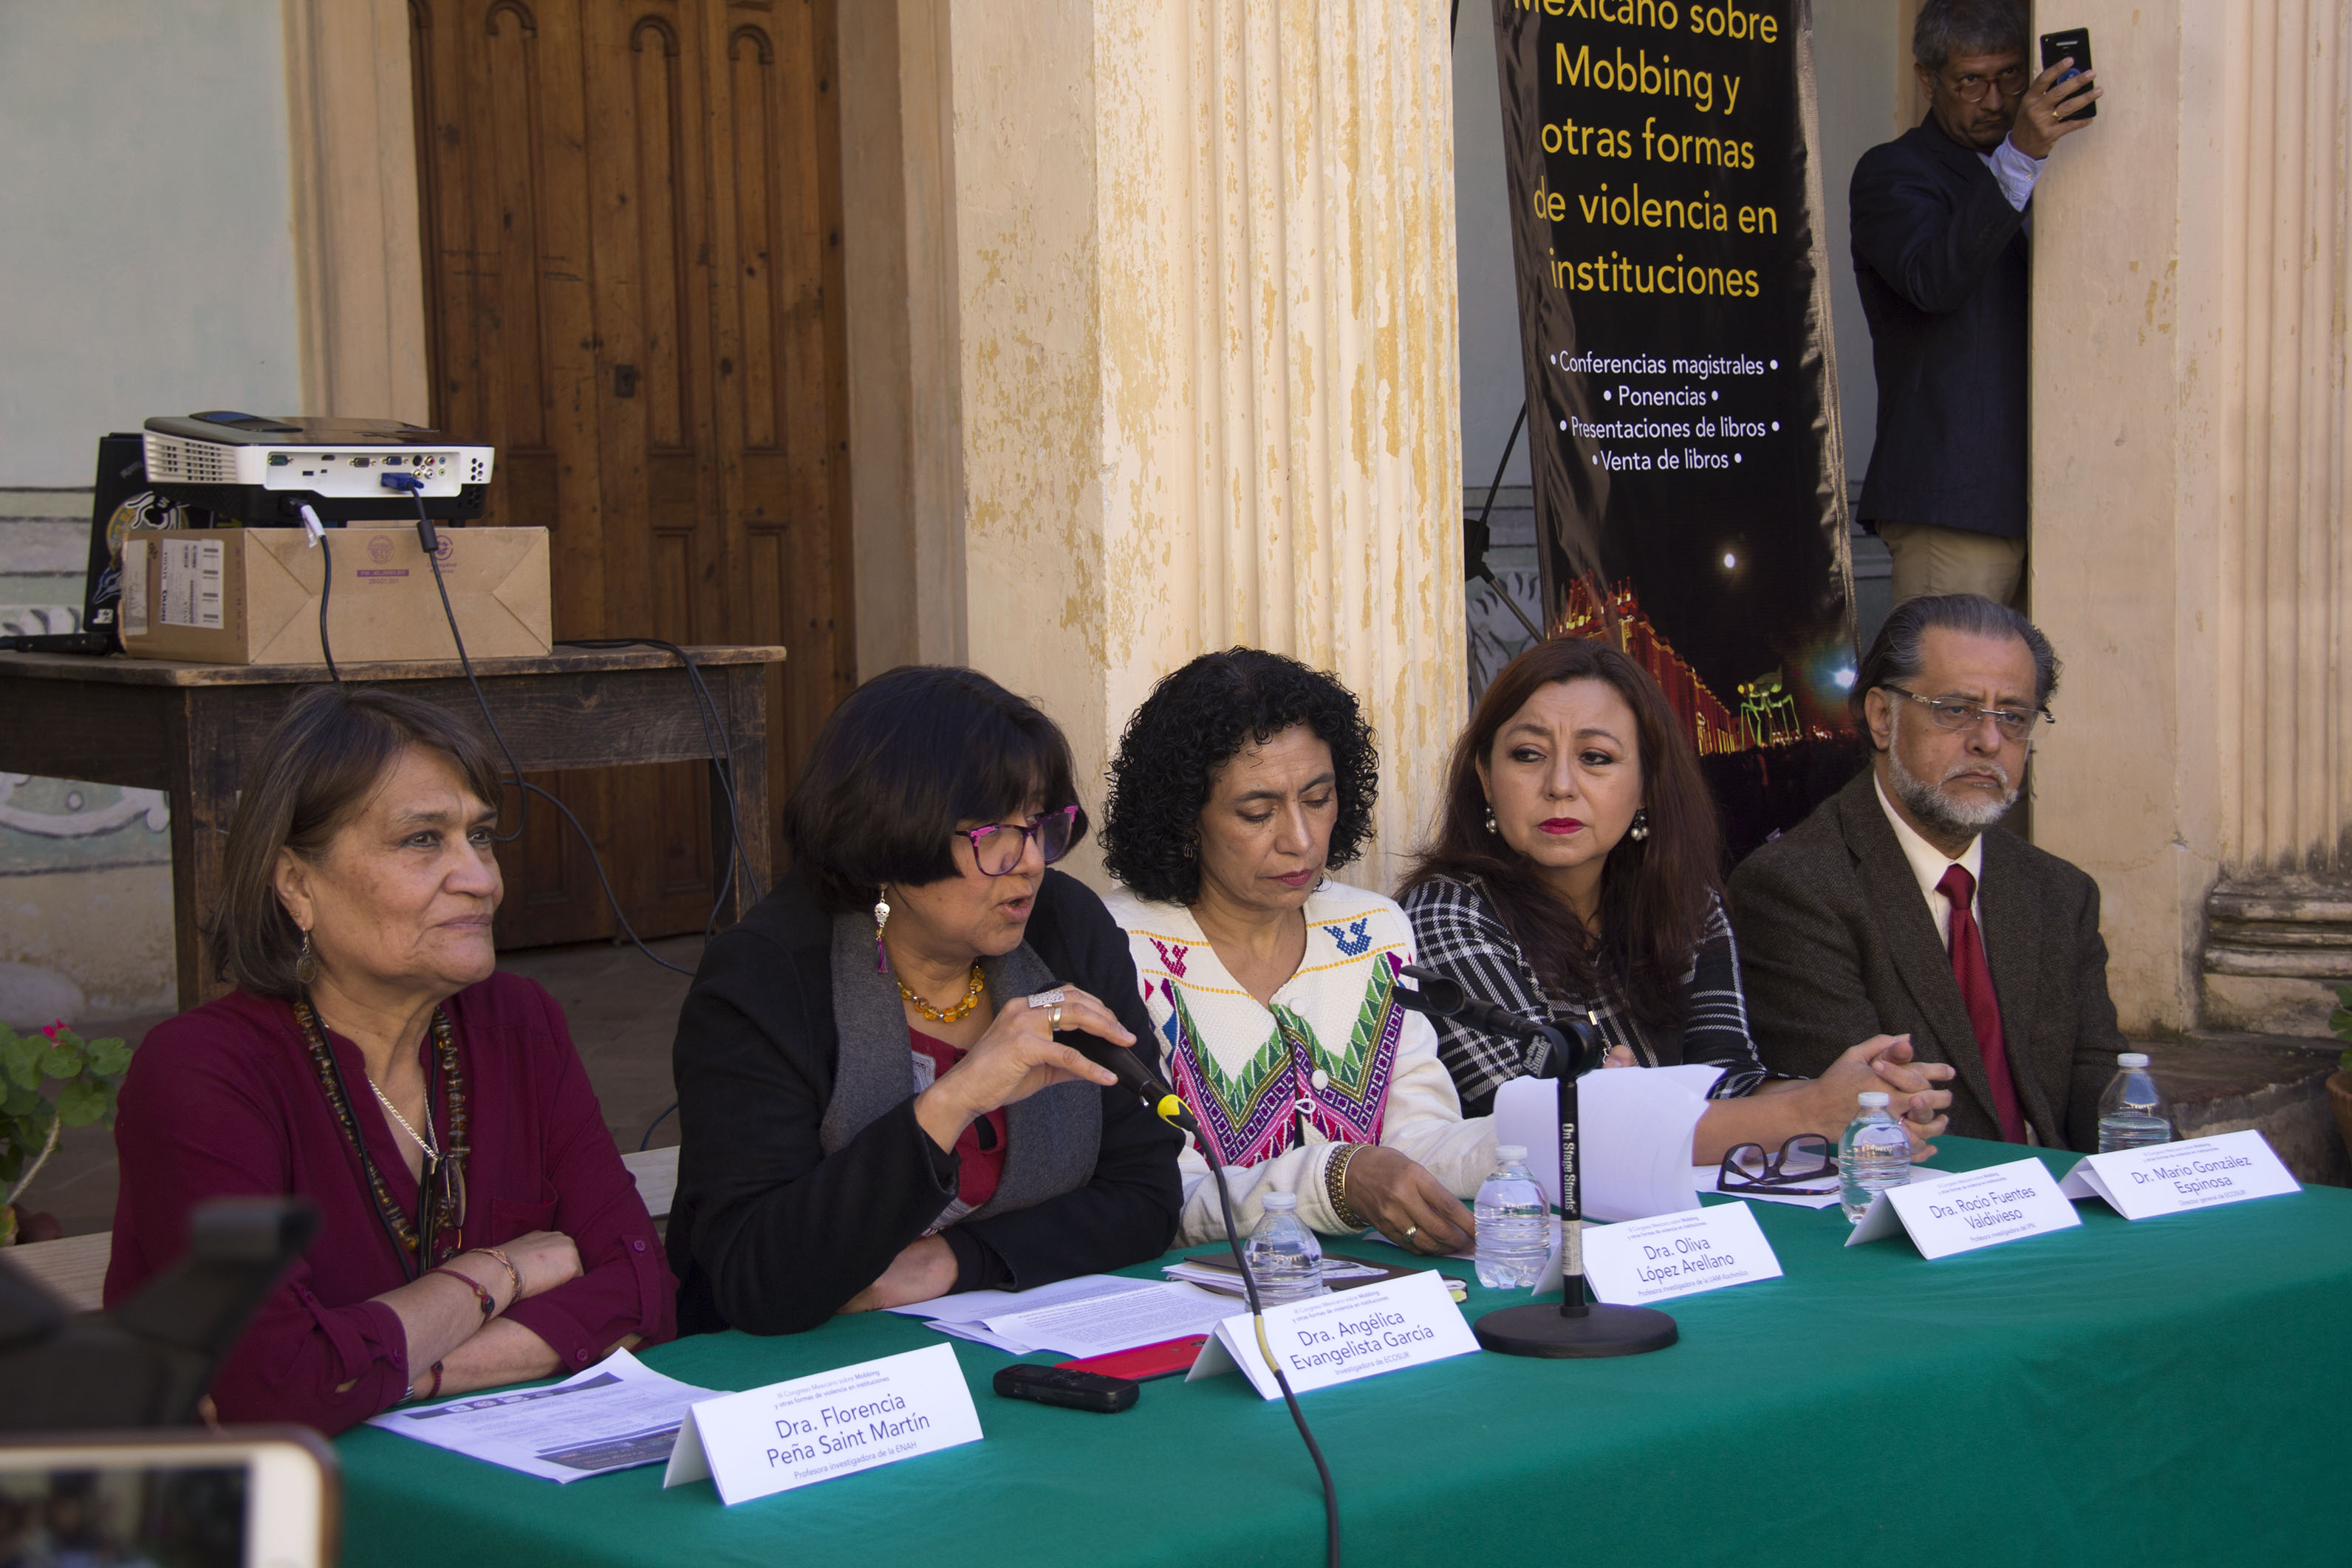 Inauguran III Congreso Mexicano sobre Mobbing y otras formas de violencia en instituciones